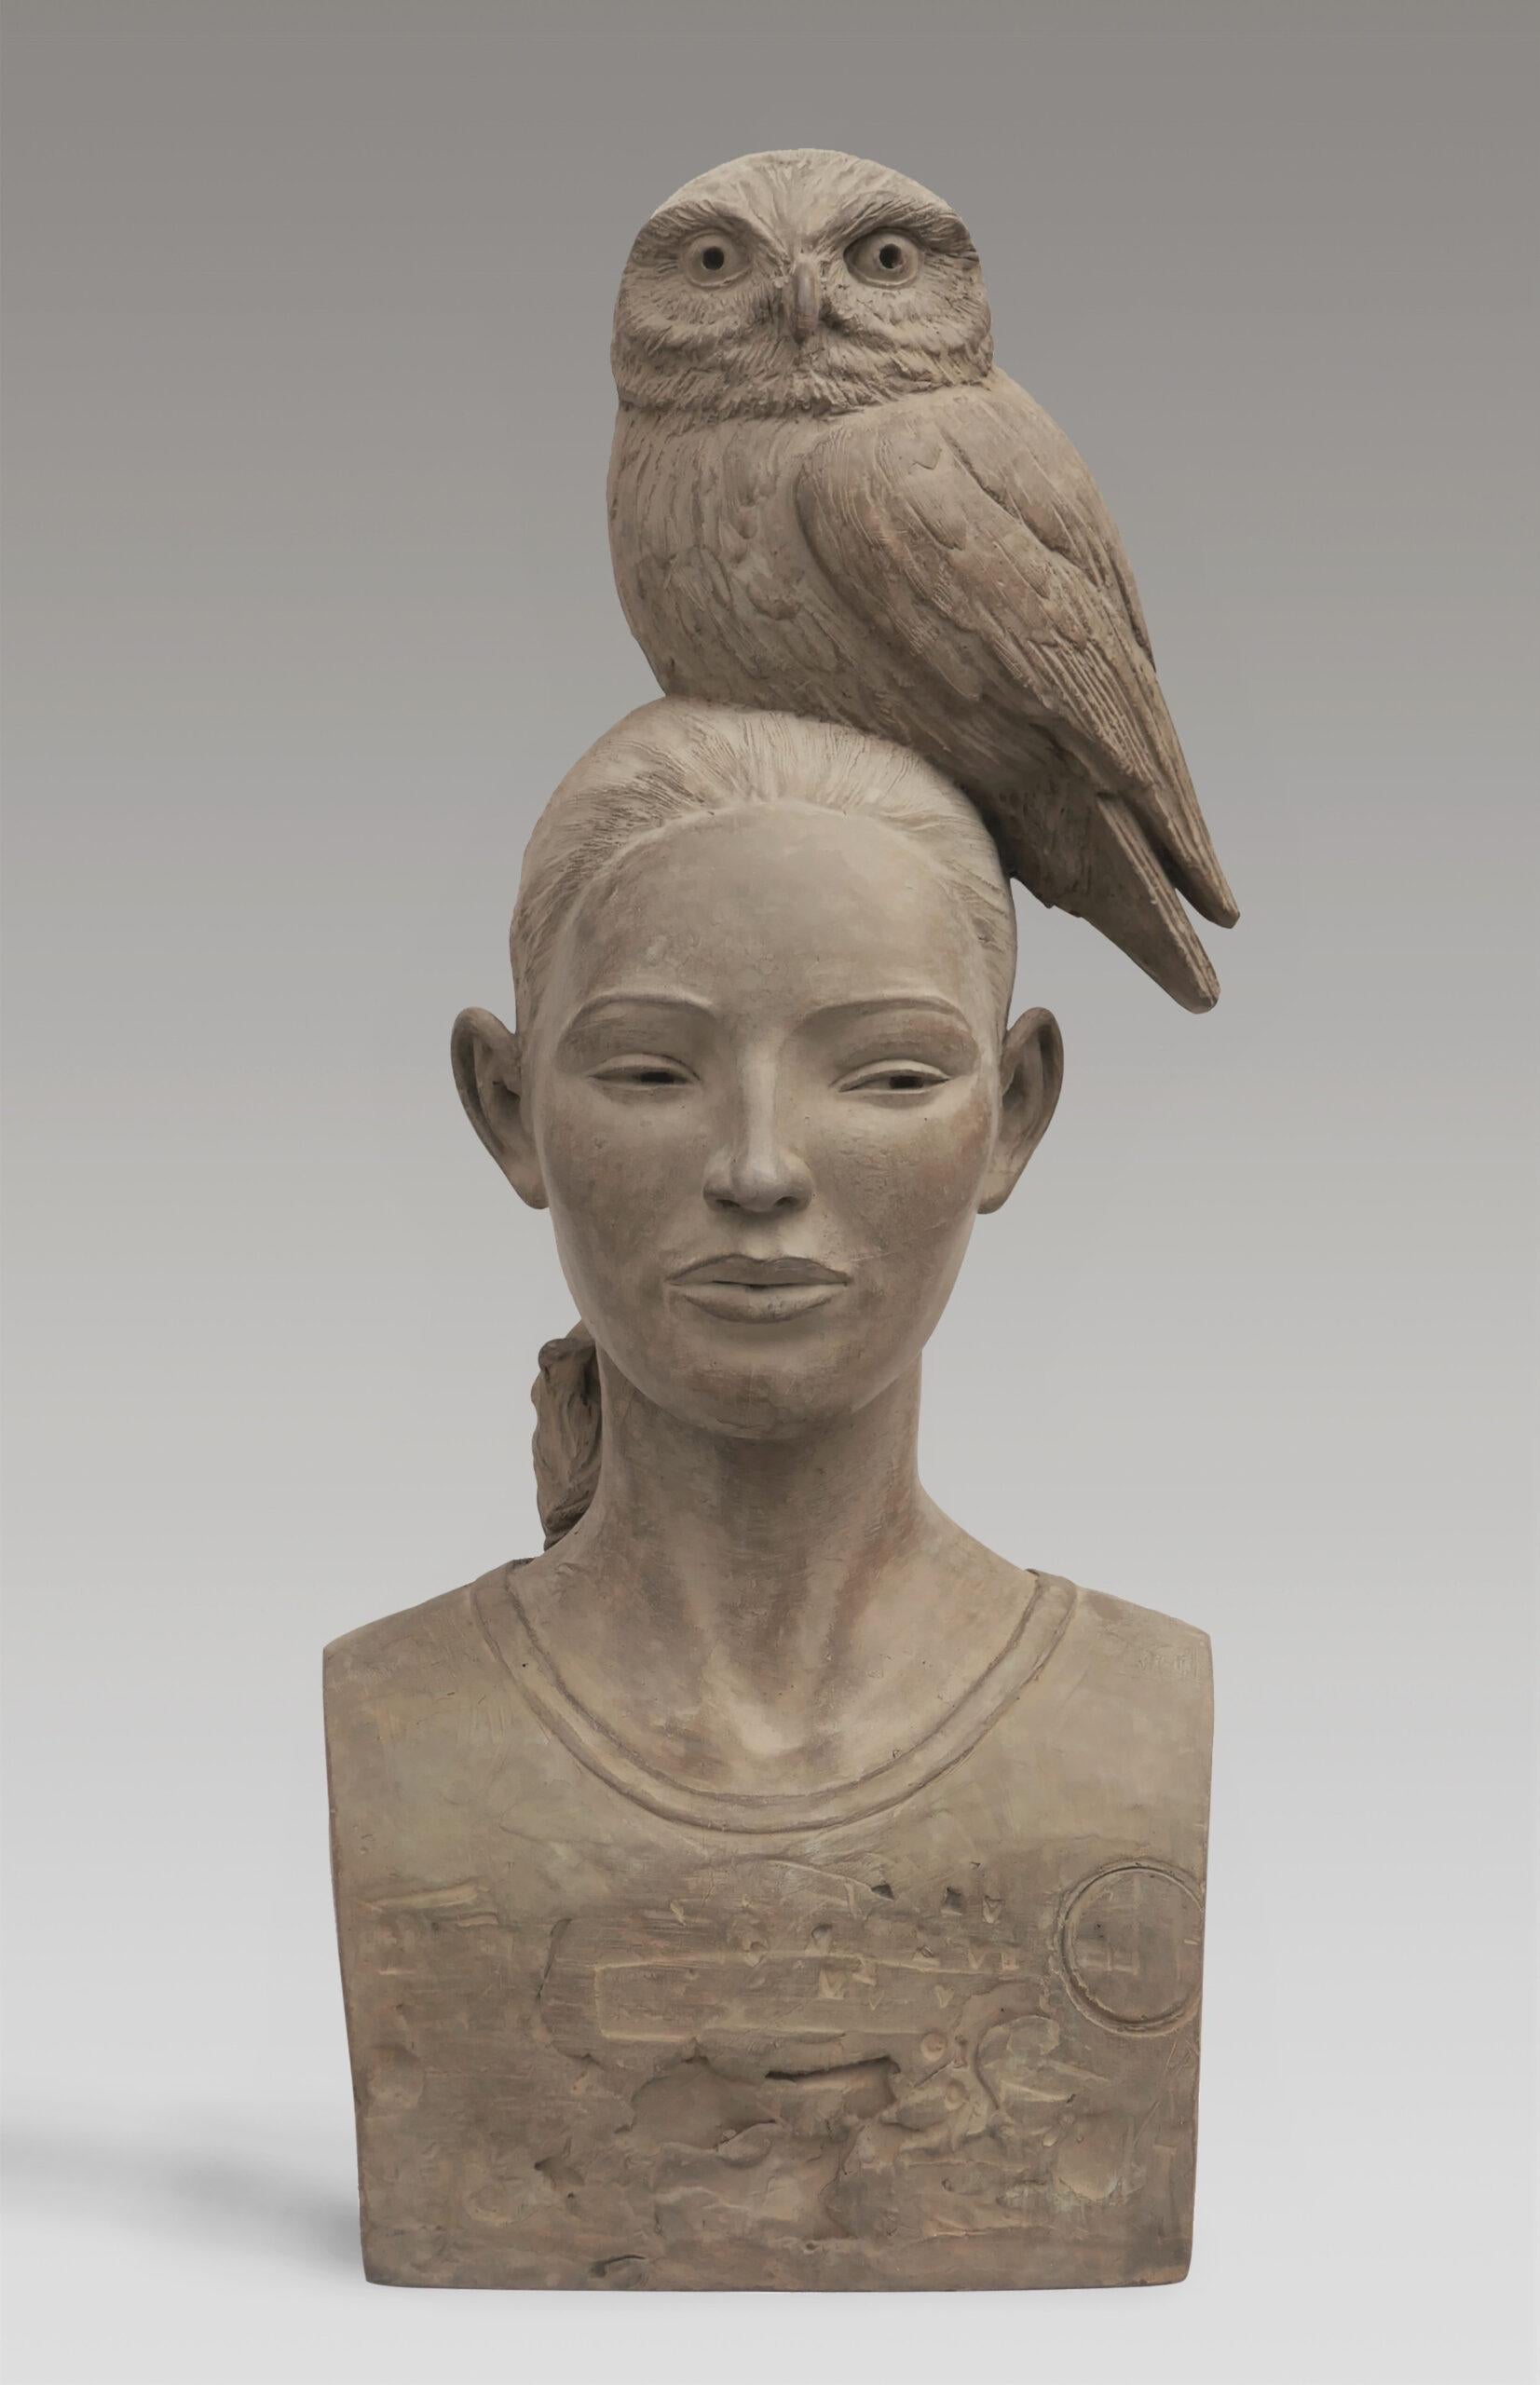 Vrouw a rencontré le hibou en bronze - Sculpture - Jeune fille avec hibou sur la tête - Wisdom en stock  - Or Nude Sculpture par Erwin Meijer